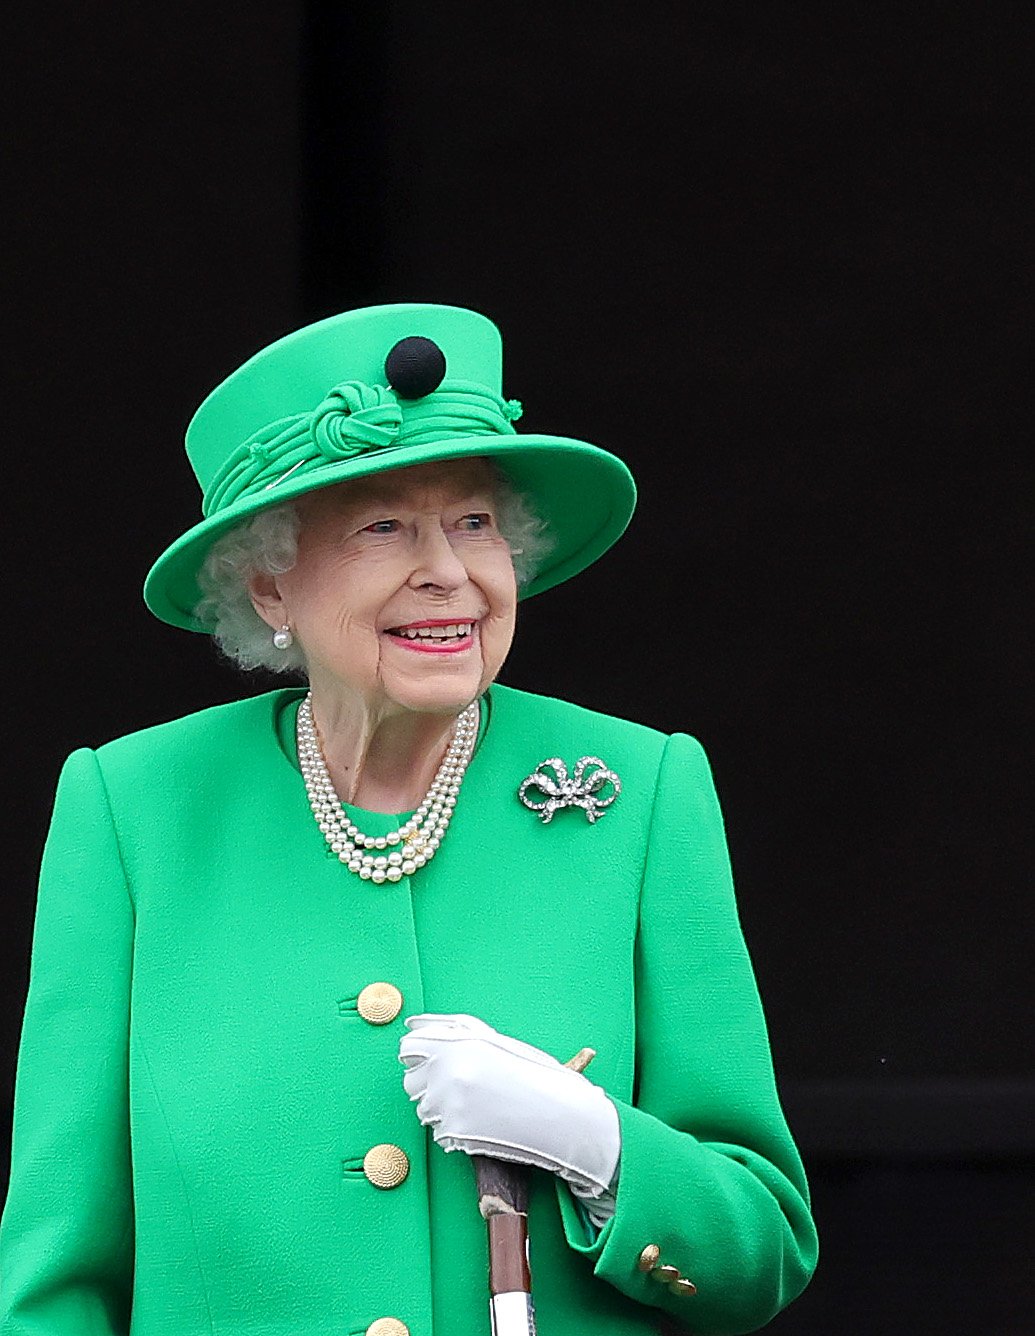 La reina Elizabeth II saluda desde el balcón del Palacio de Buckingham el 5 de junio de 2022 en Londres, Inglaterra. | Foto: Getty Images